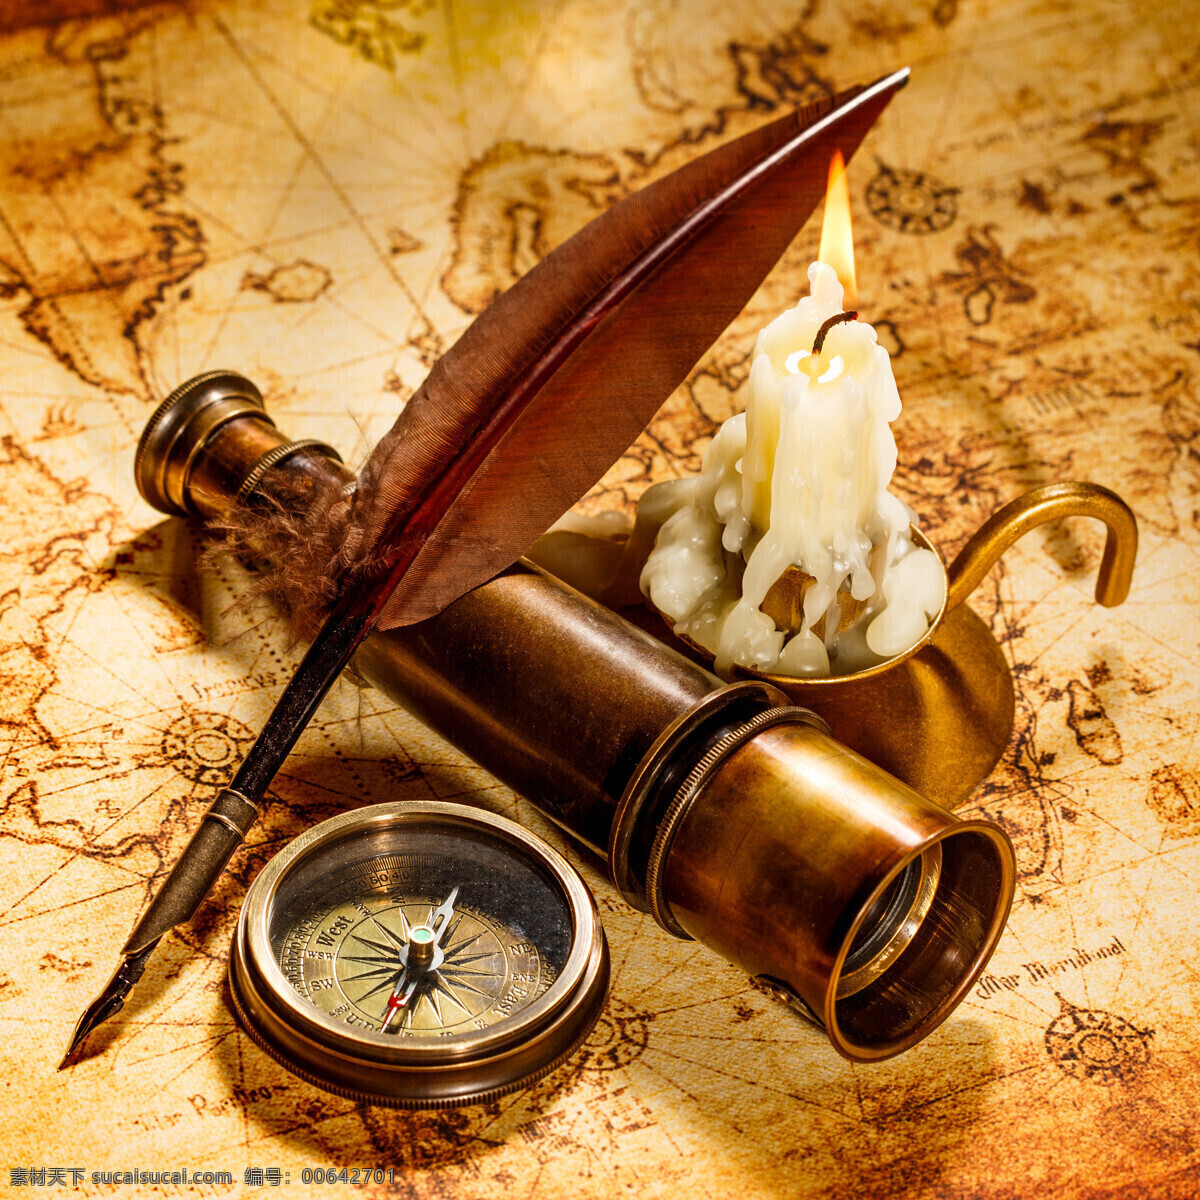 蜡烛 羽毛 指南针 复古怀旧 西洋望远镜 航海地图 地图 航海用品 其他类别 生活百科 黄色